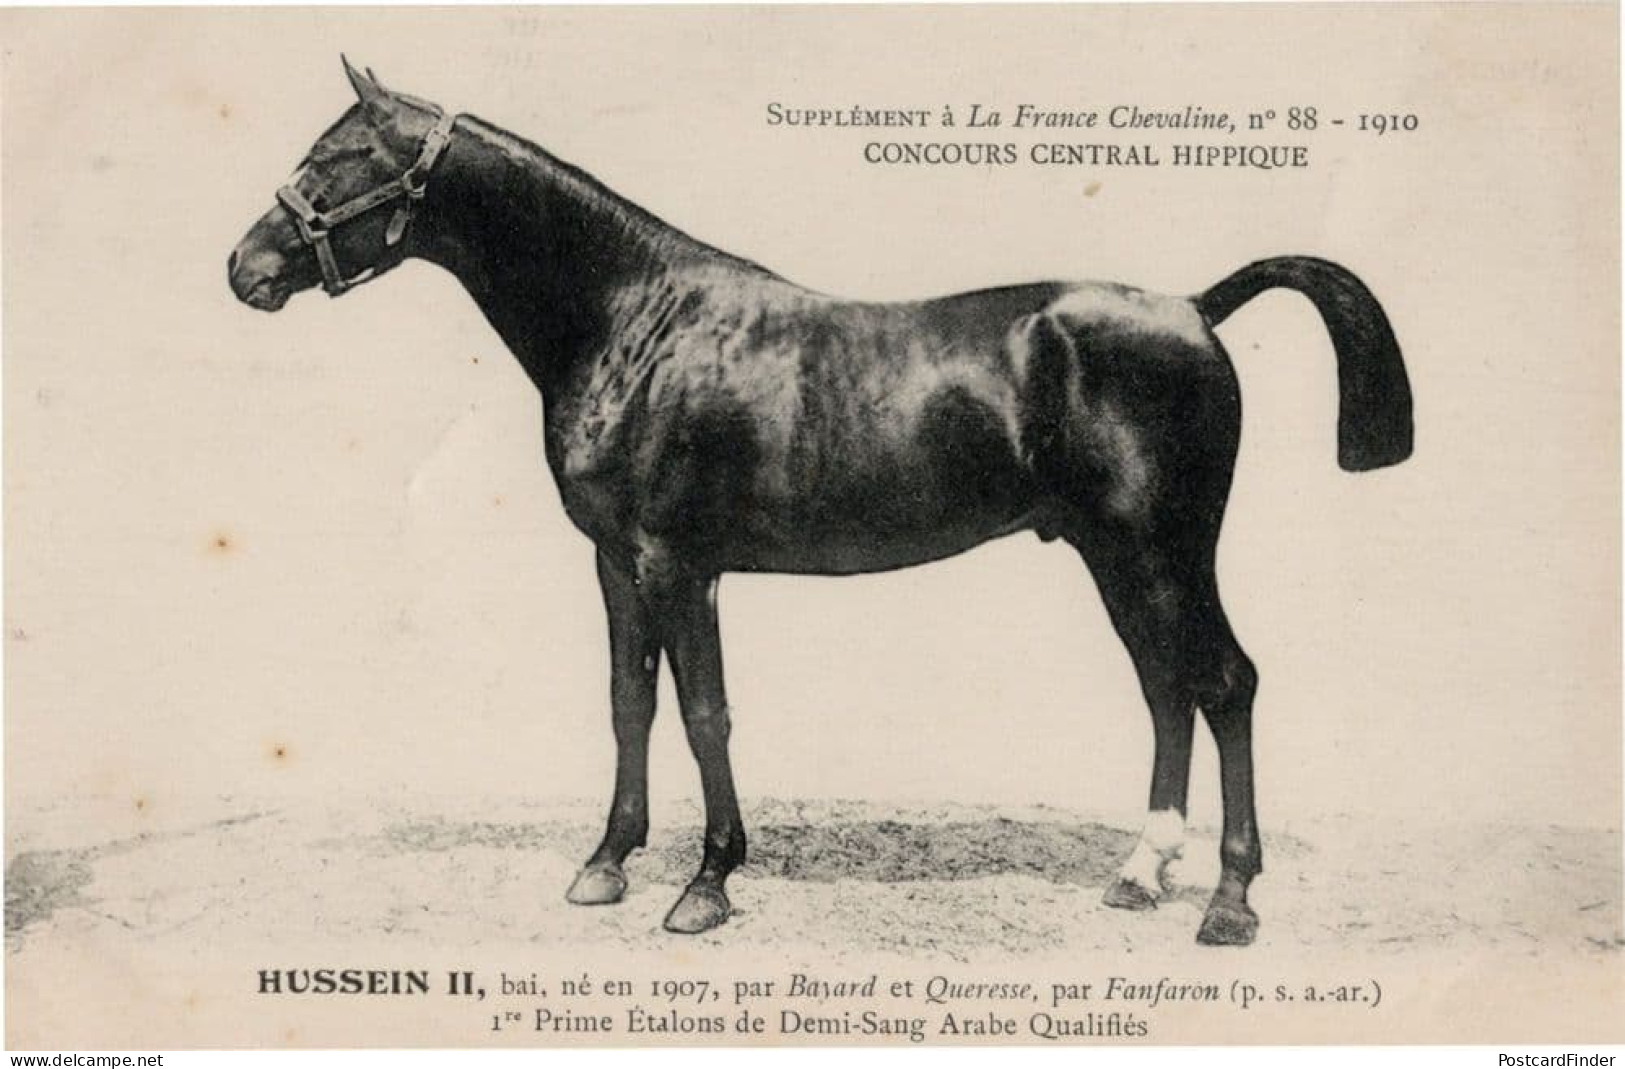 Hussein II La France Chevaline 1907 Race Horse Antique PB Postcard - Horse Show